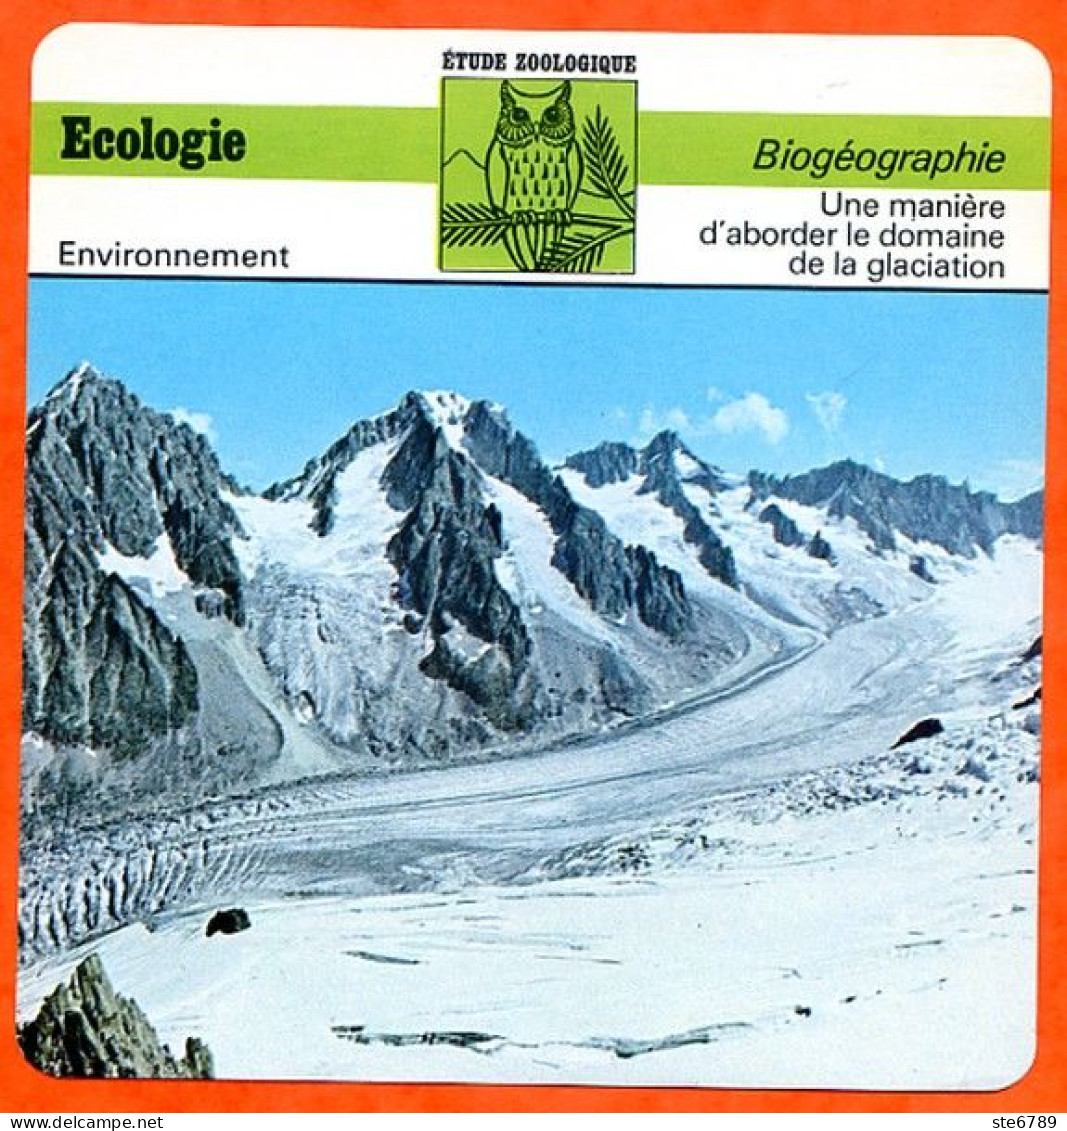 Fiche Ecologie Glaciation Illustration Glacier Du Tour Aiguilles Argentière Biogéographie Etude Zoologique Environnement - Géographie